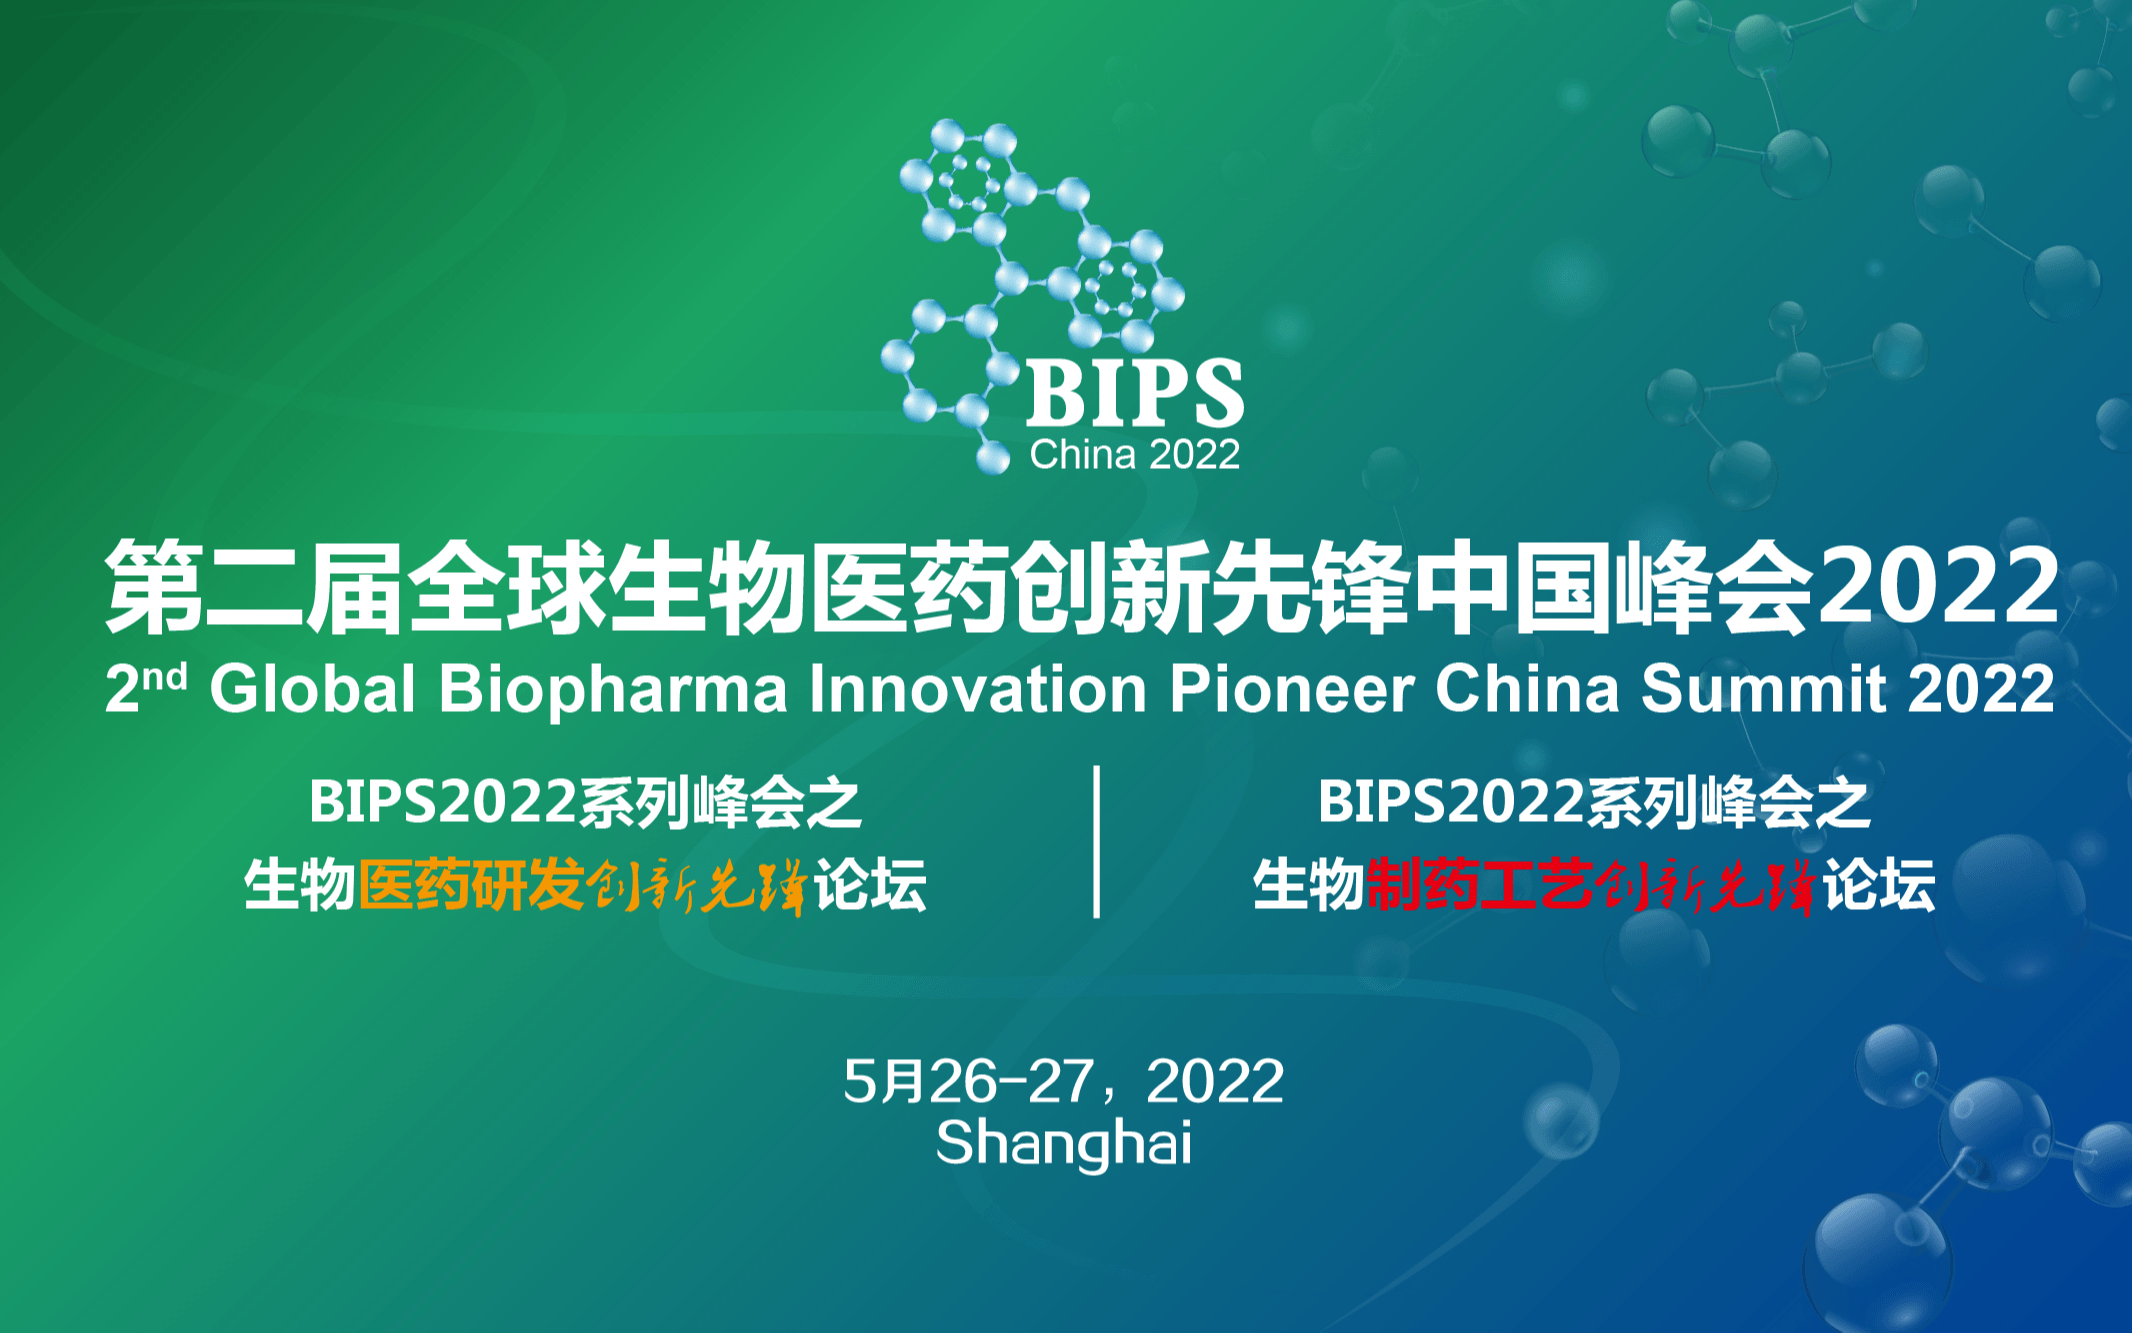 BIPS 全球生物醫藥創新先鋒中國峰會2022